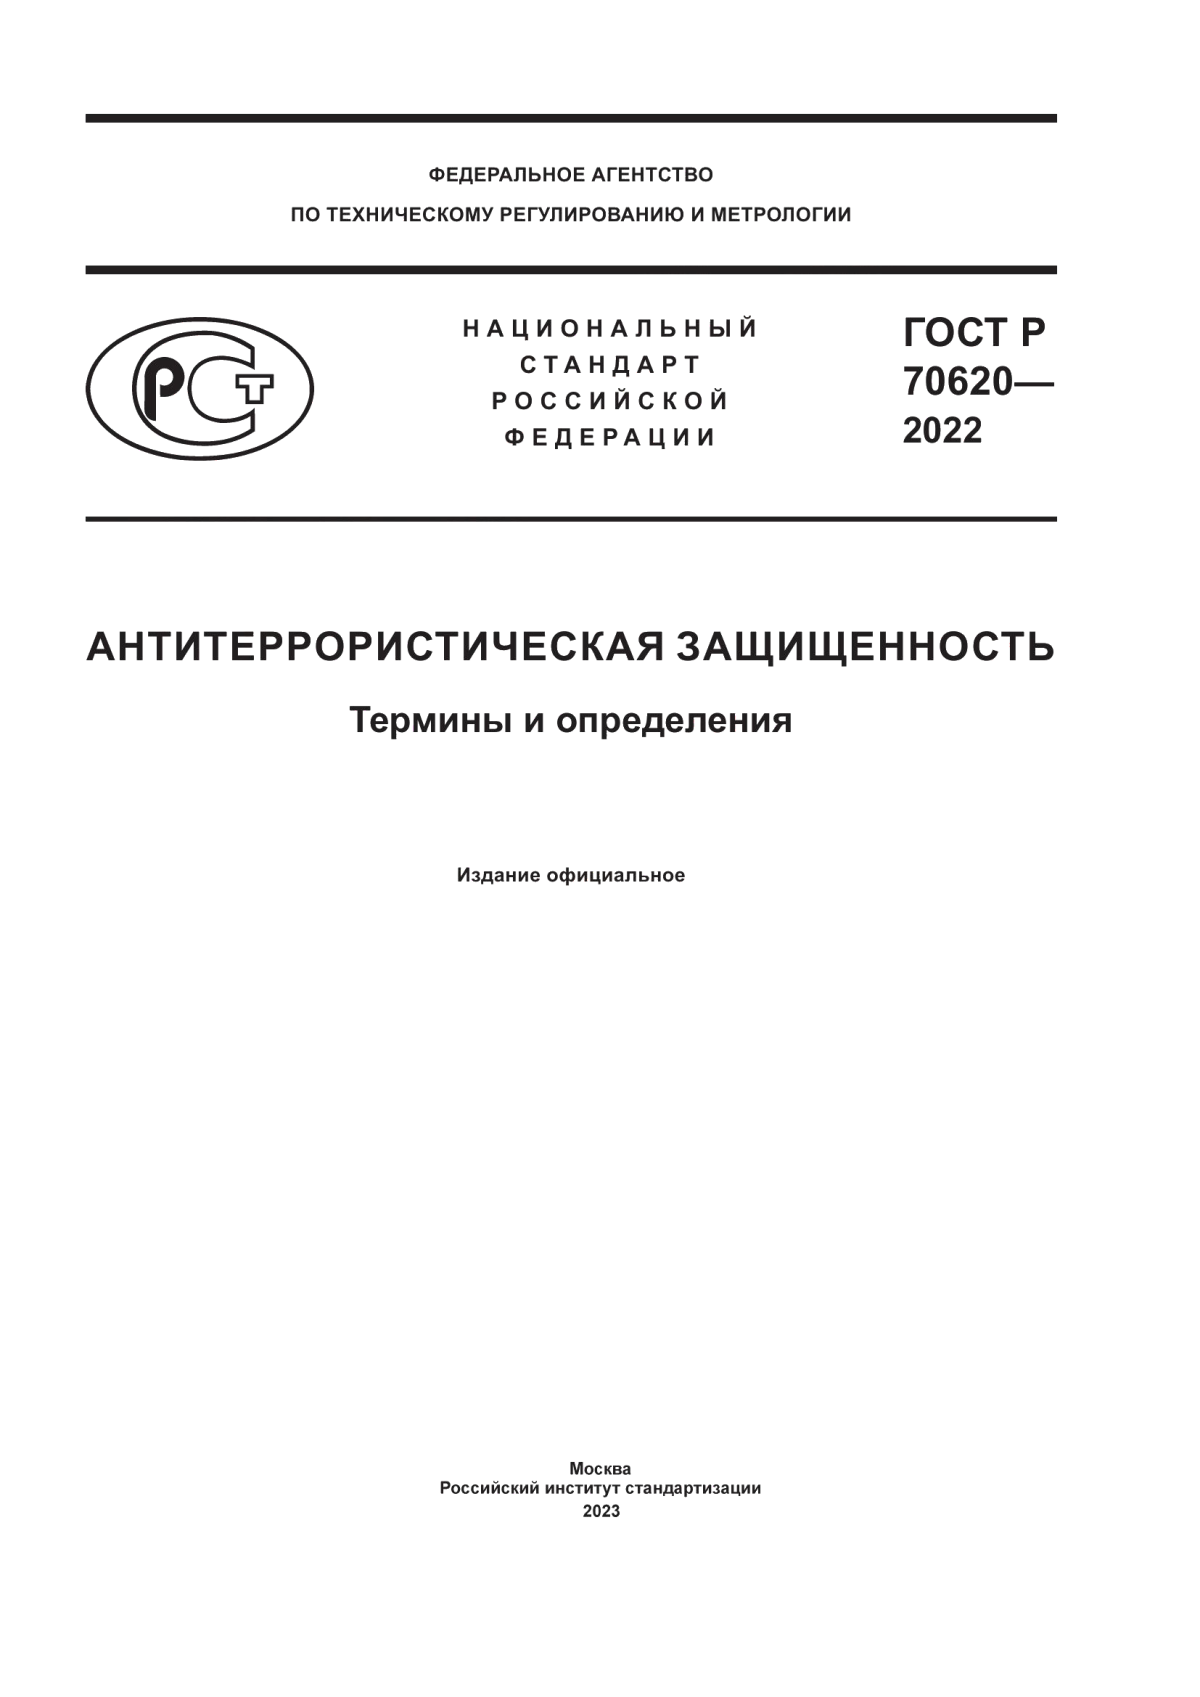 ГОСТ Р 70620-2022 Антитеррористическая защищенность. Термины и определения